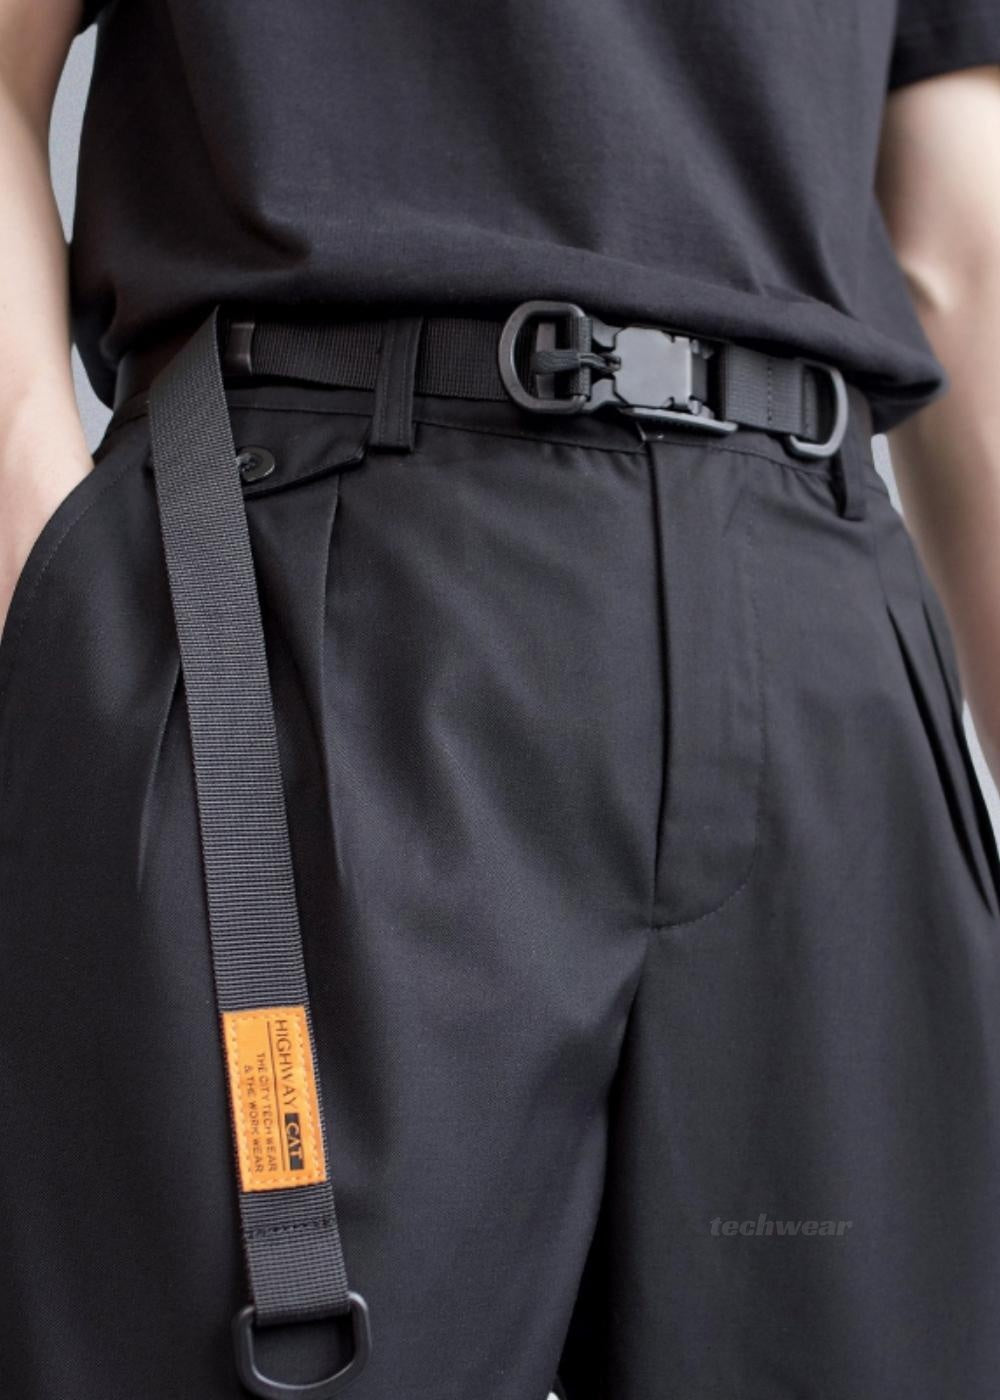 Techwear Magnetic Quick Release Buckle Belt - Affordable Techwear - X